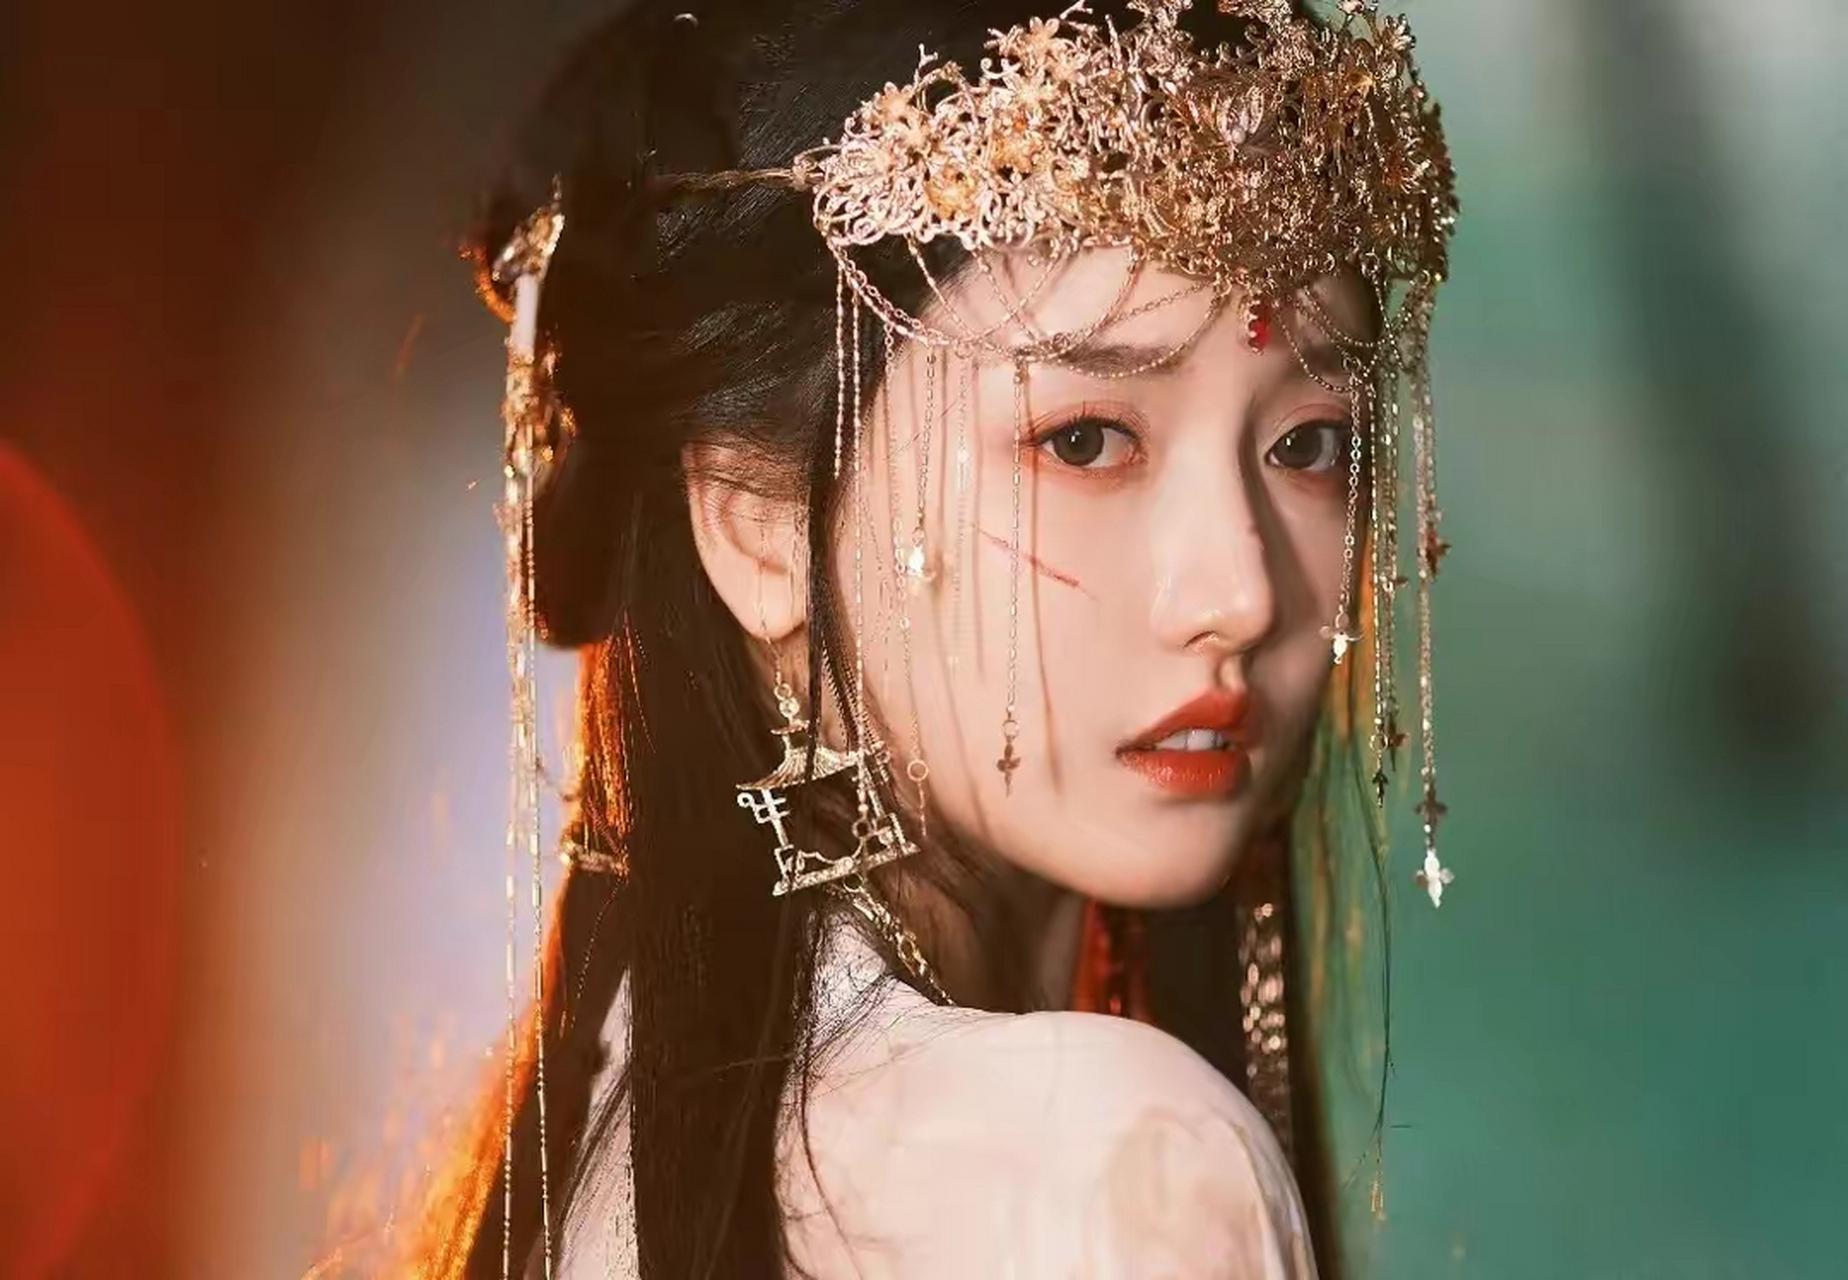 美女姜贞羽,演绎落跑公主,娇羞的面容,纯洁的眼神,我见犹怜